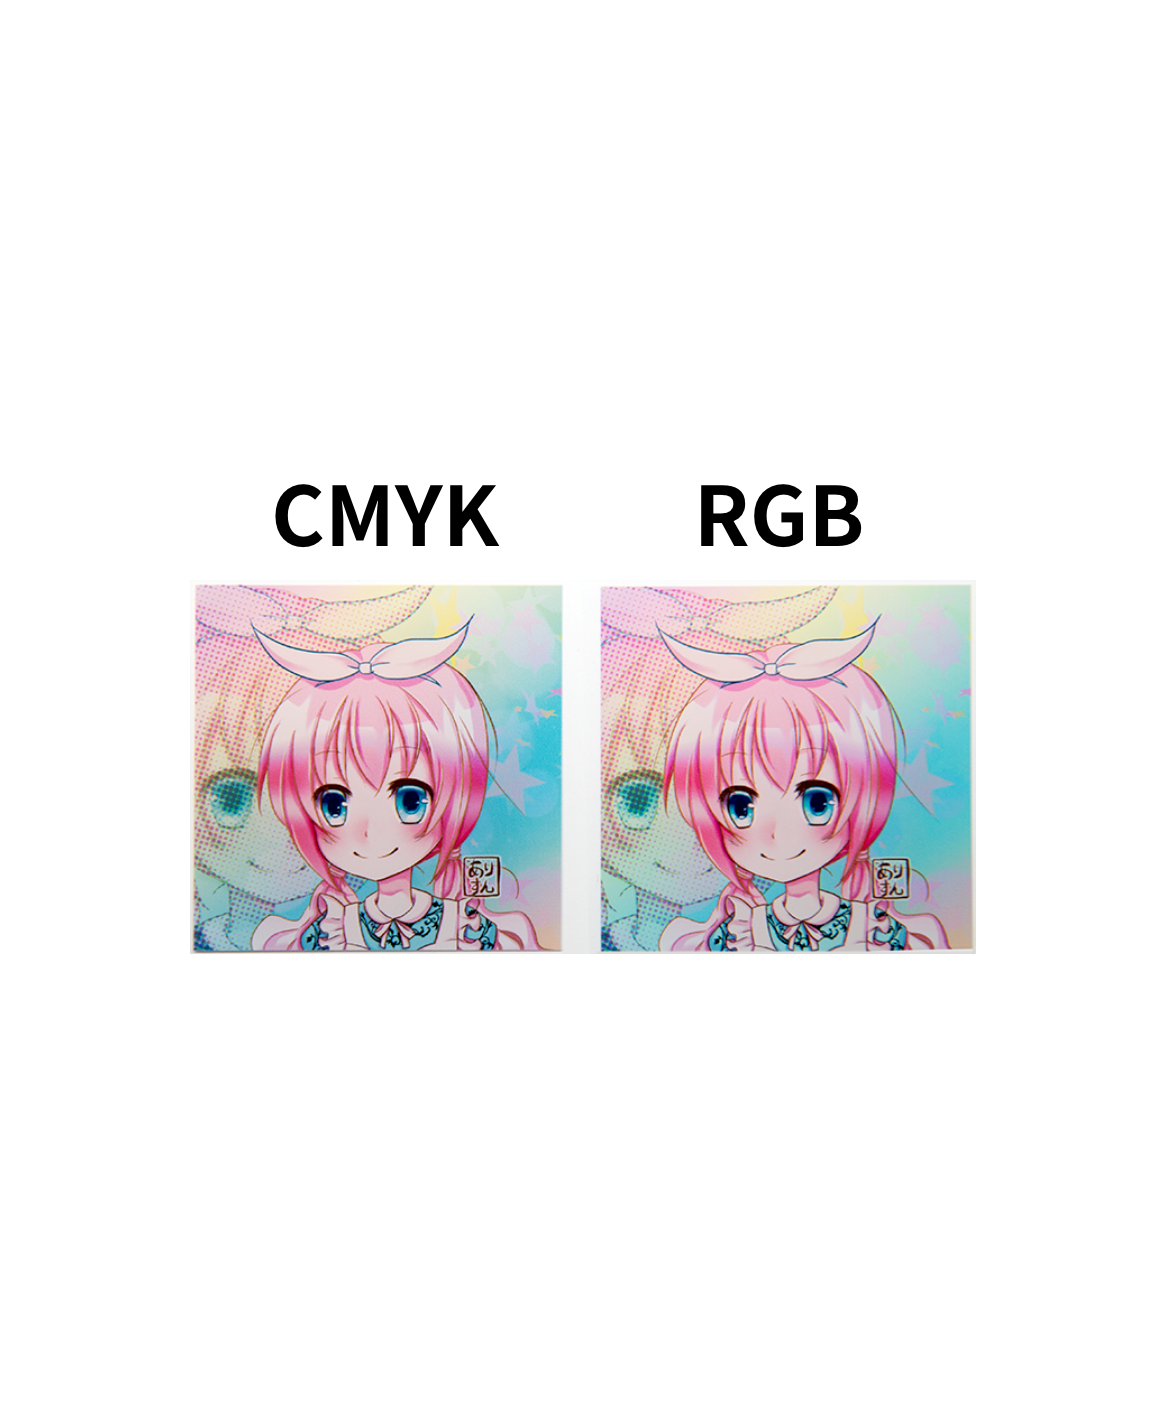 CMYK原稿とRGB原稿の印刷結果の違い – ray art works株式会社